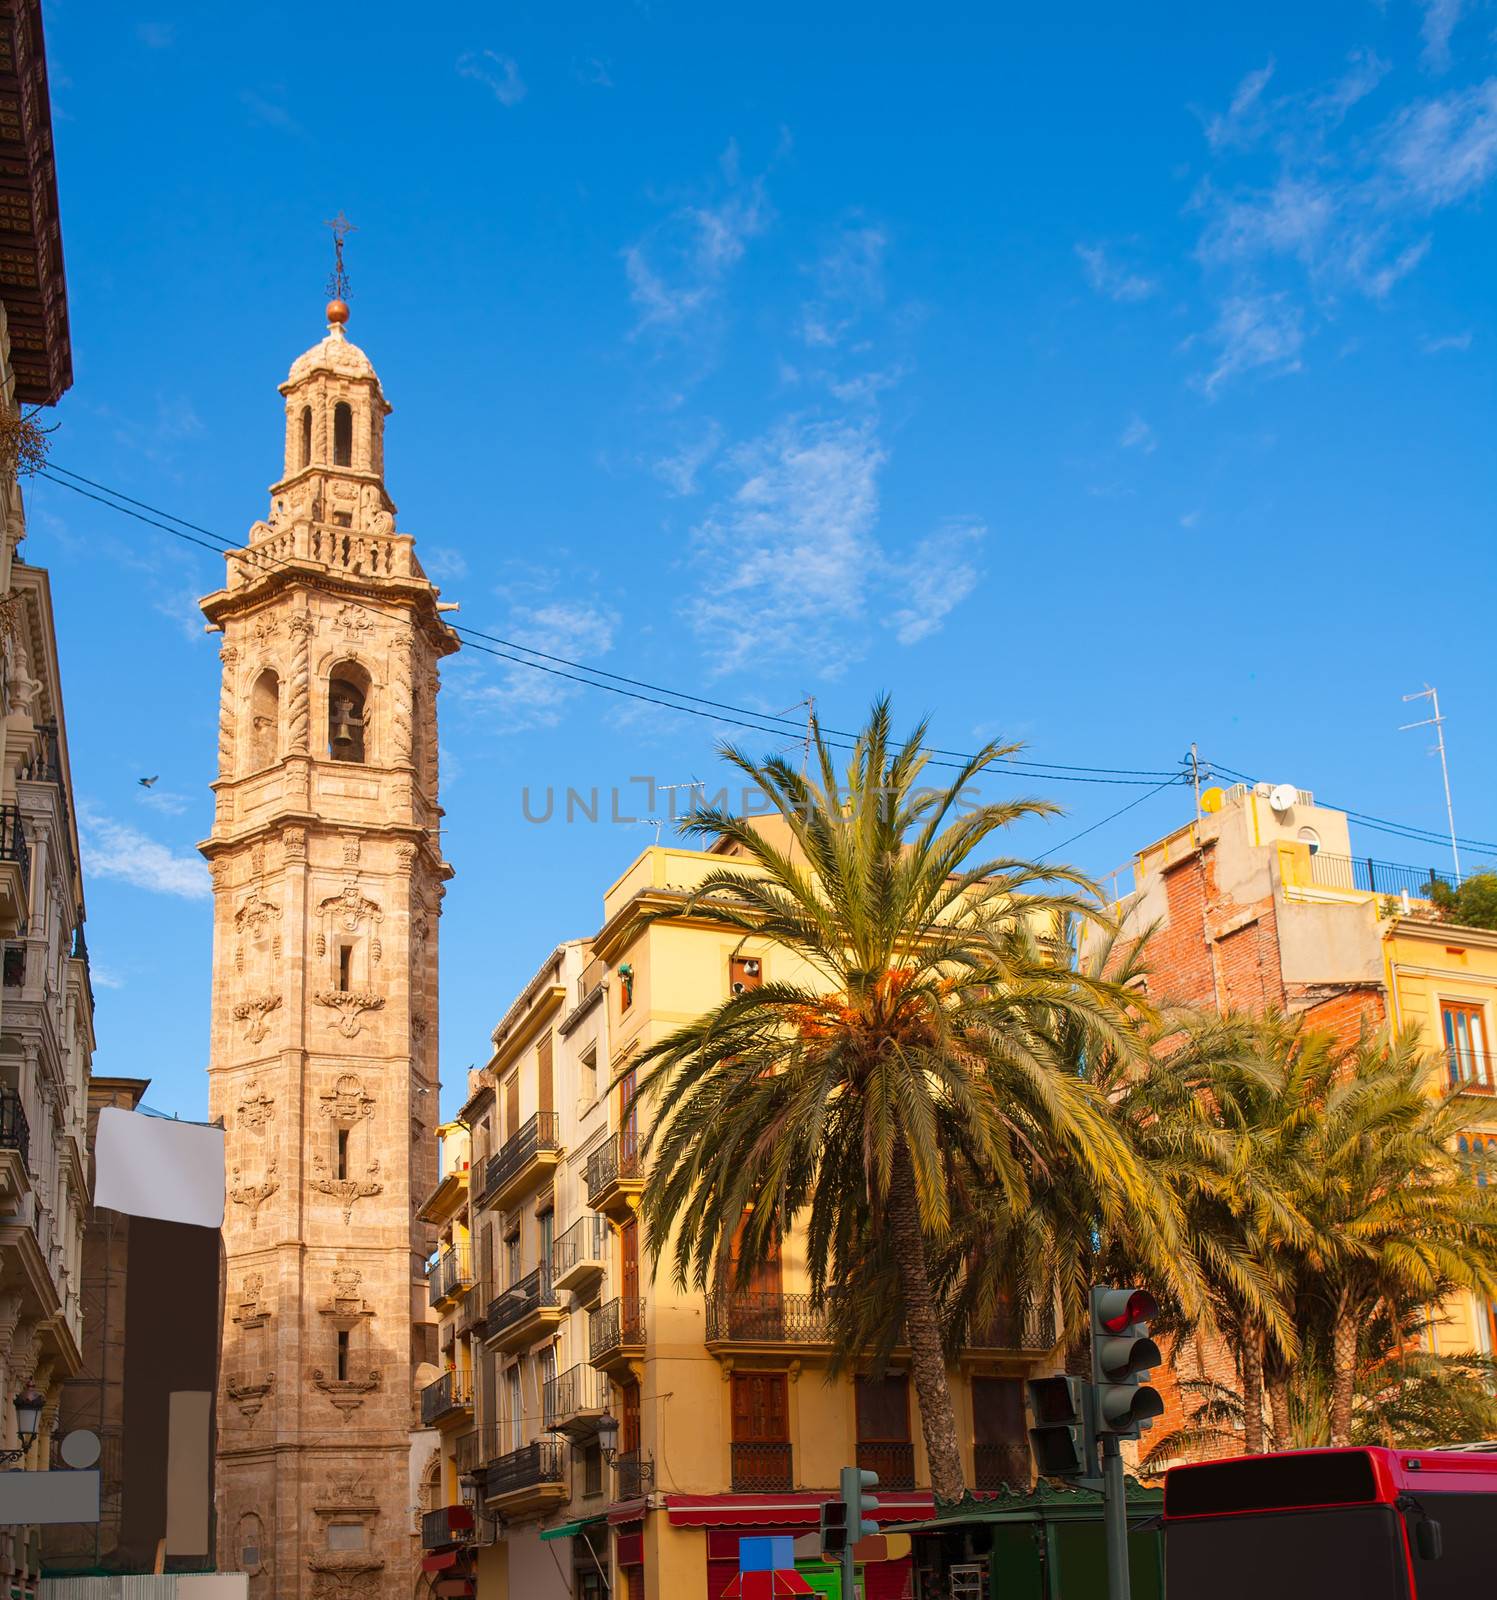 Valencia Plaza de la Reina with Santa Catalina church tower by lunamarina